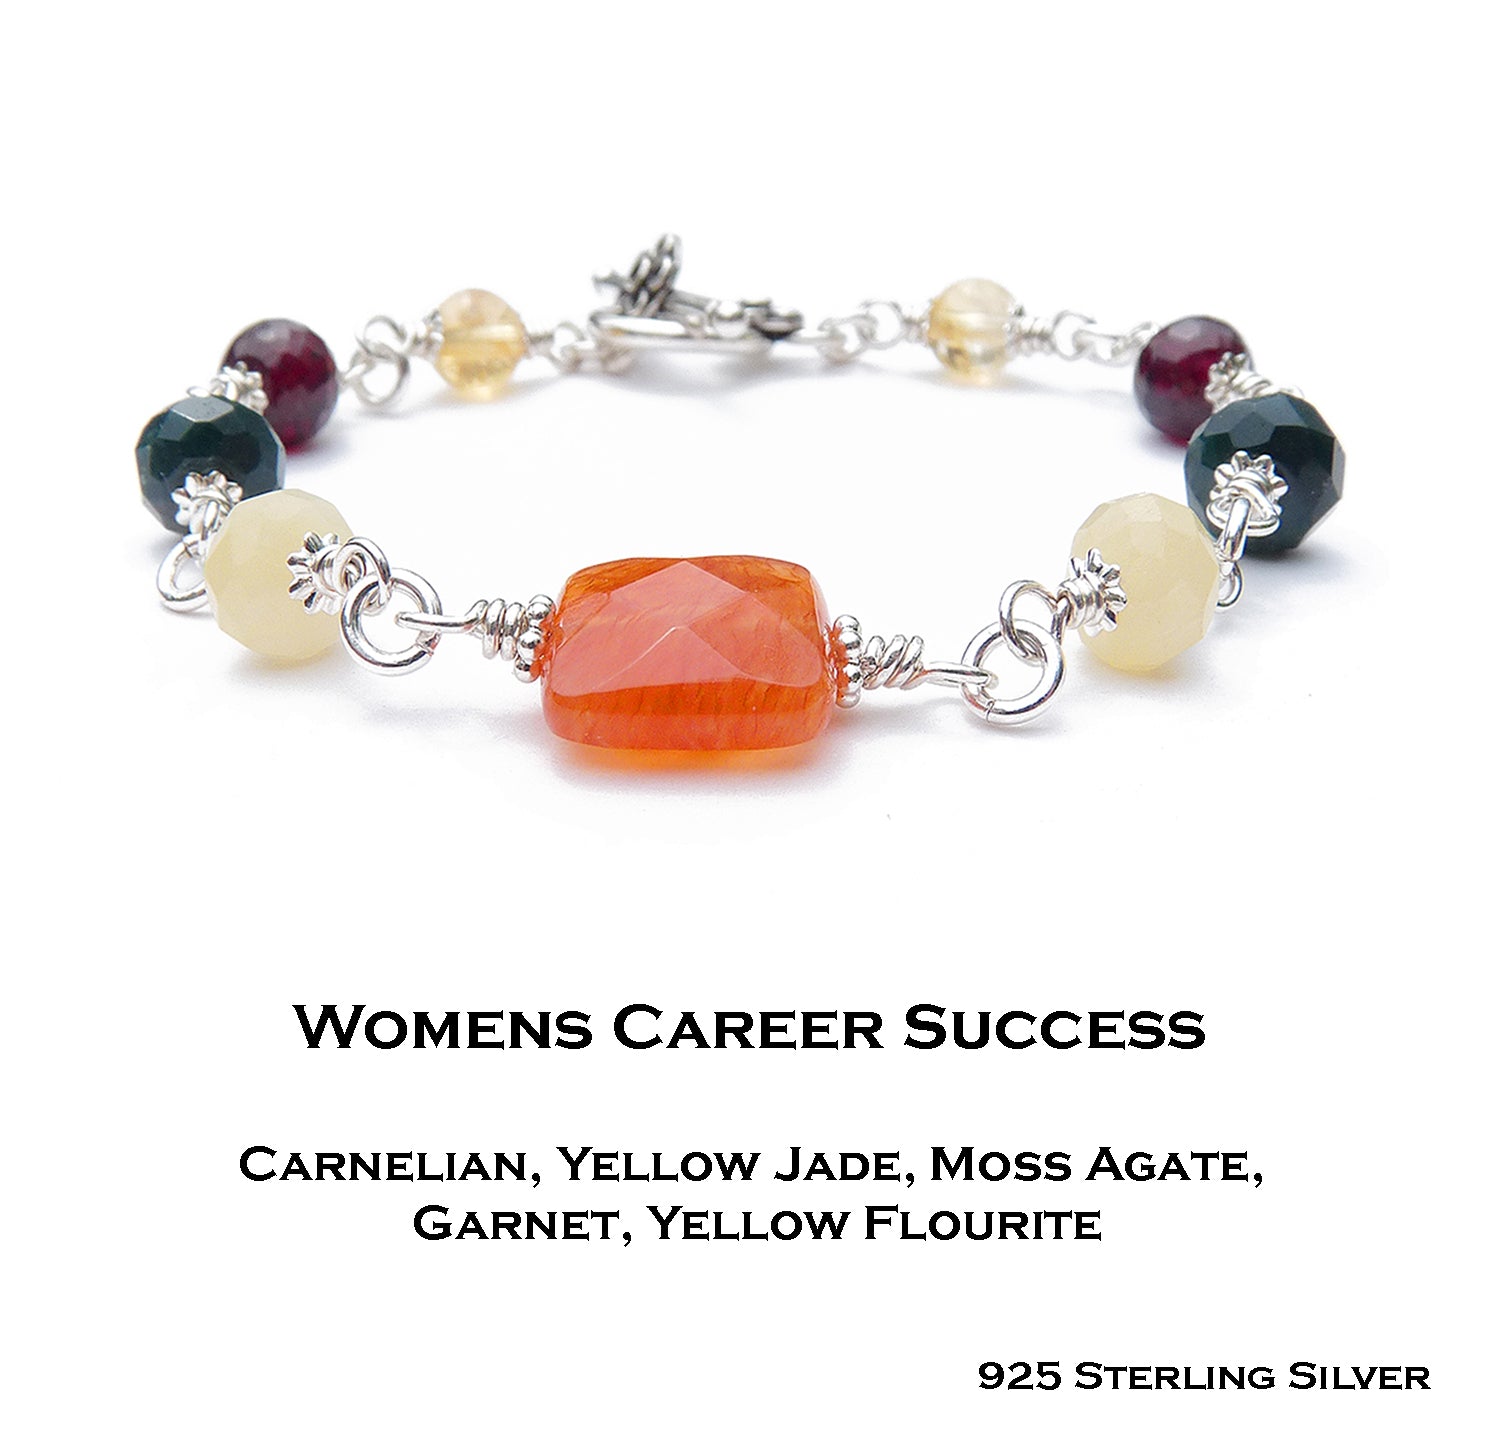 Silver Prosperity Bracelet - Success Crystal Healing Bracelet for Women